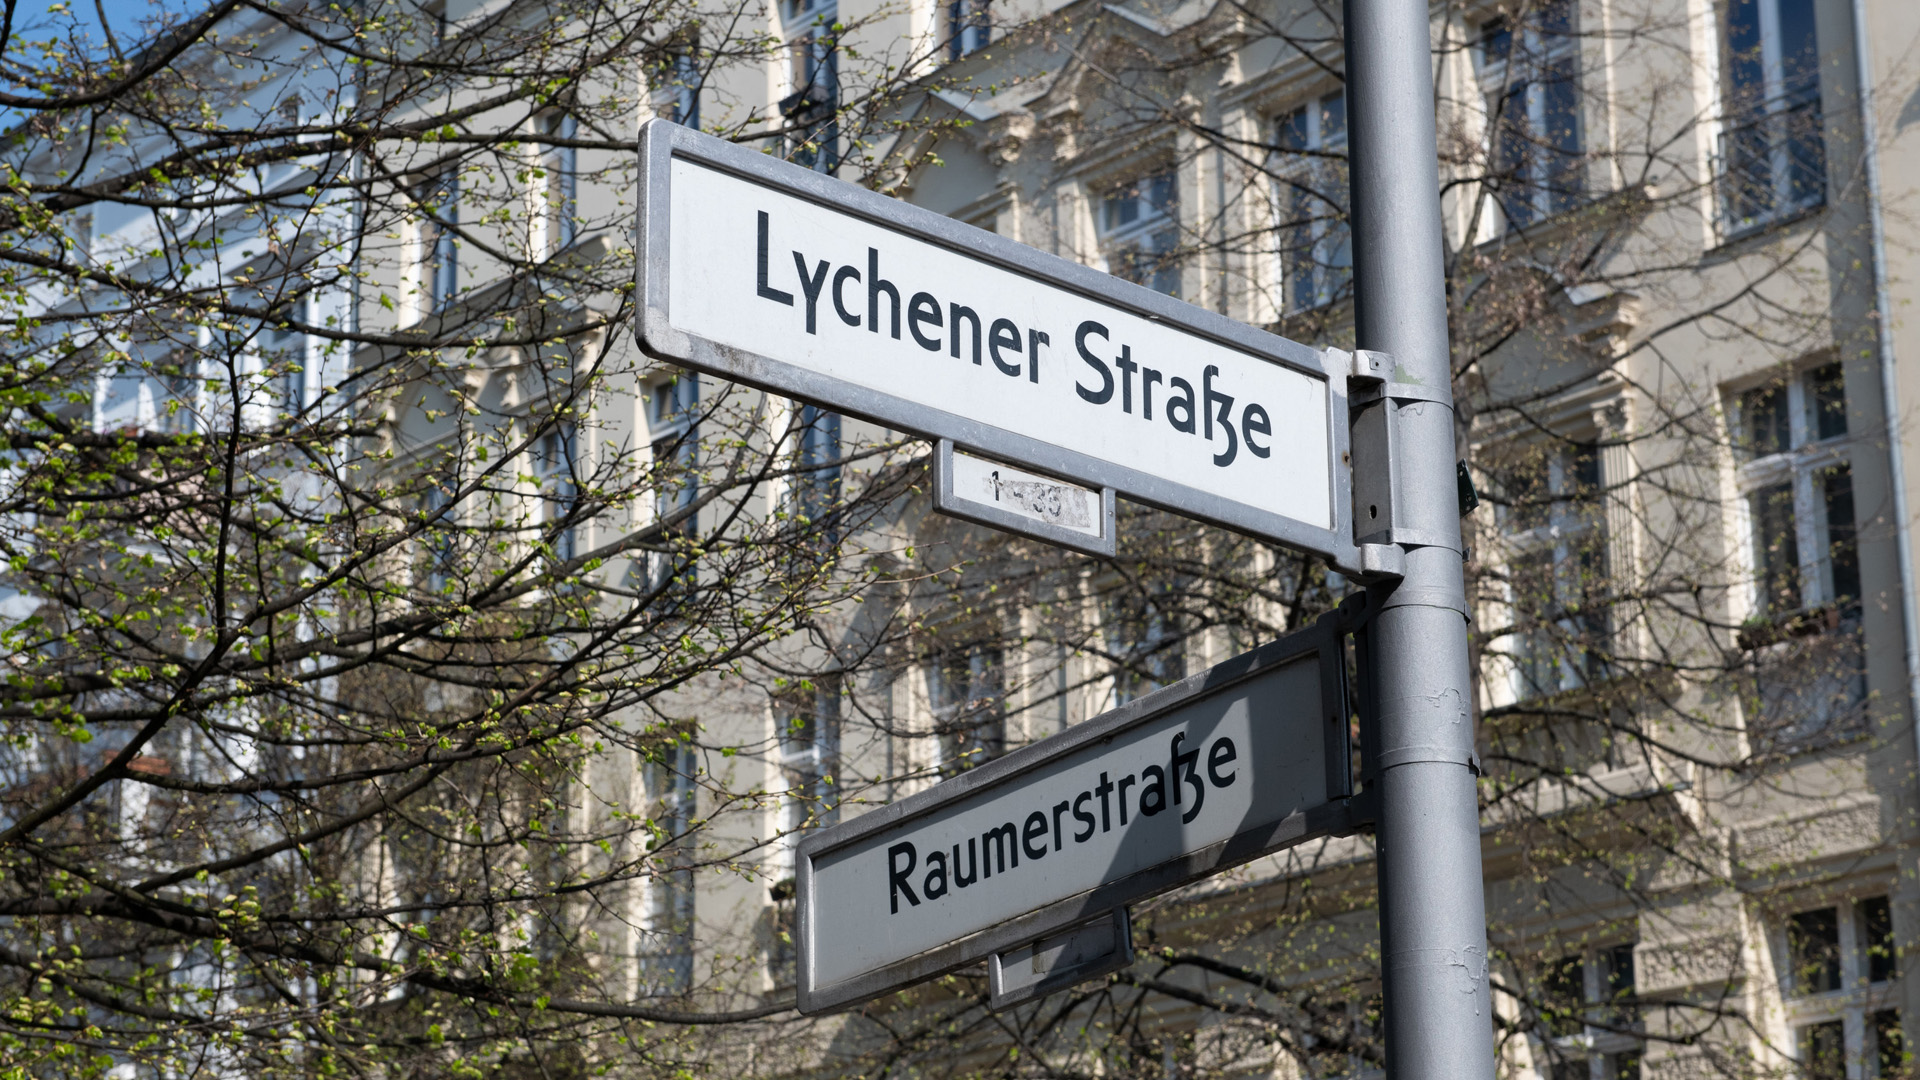 Die antisemitische Attacke ereignete sich nach Polizeiangaben an der Straßenecke Lychener Straße/Raumerstraße im Stadtteil Prenzlauer Berg | dpa